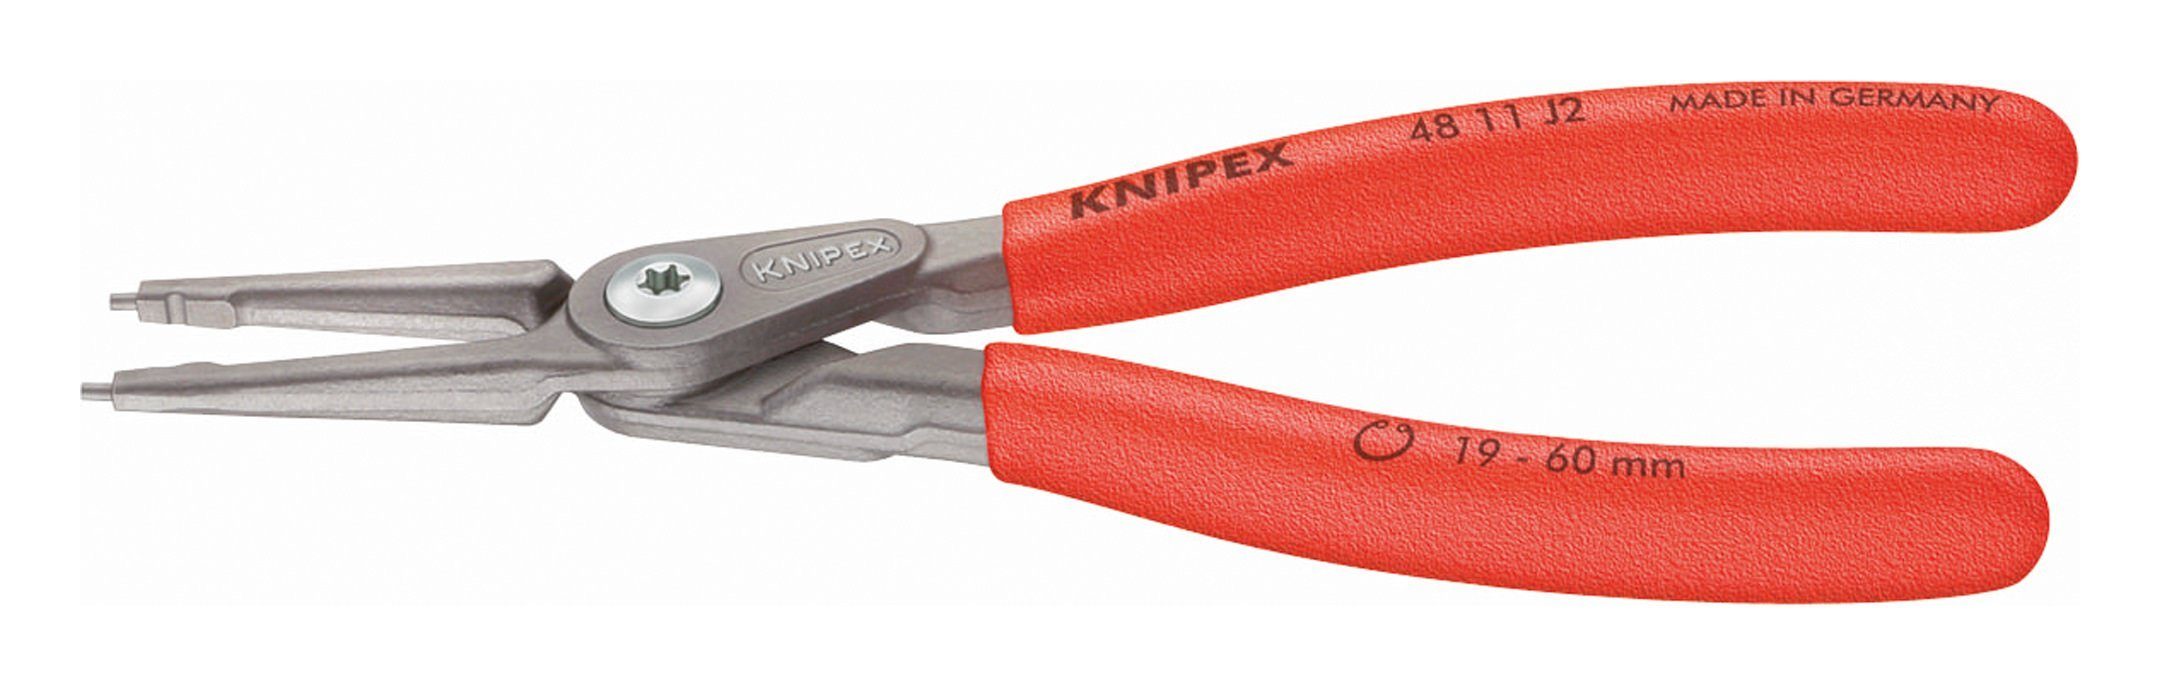 Knipex Sicherungsringzange, Gerade J 4 grau atramentiert